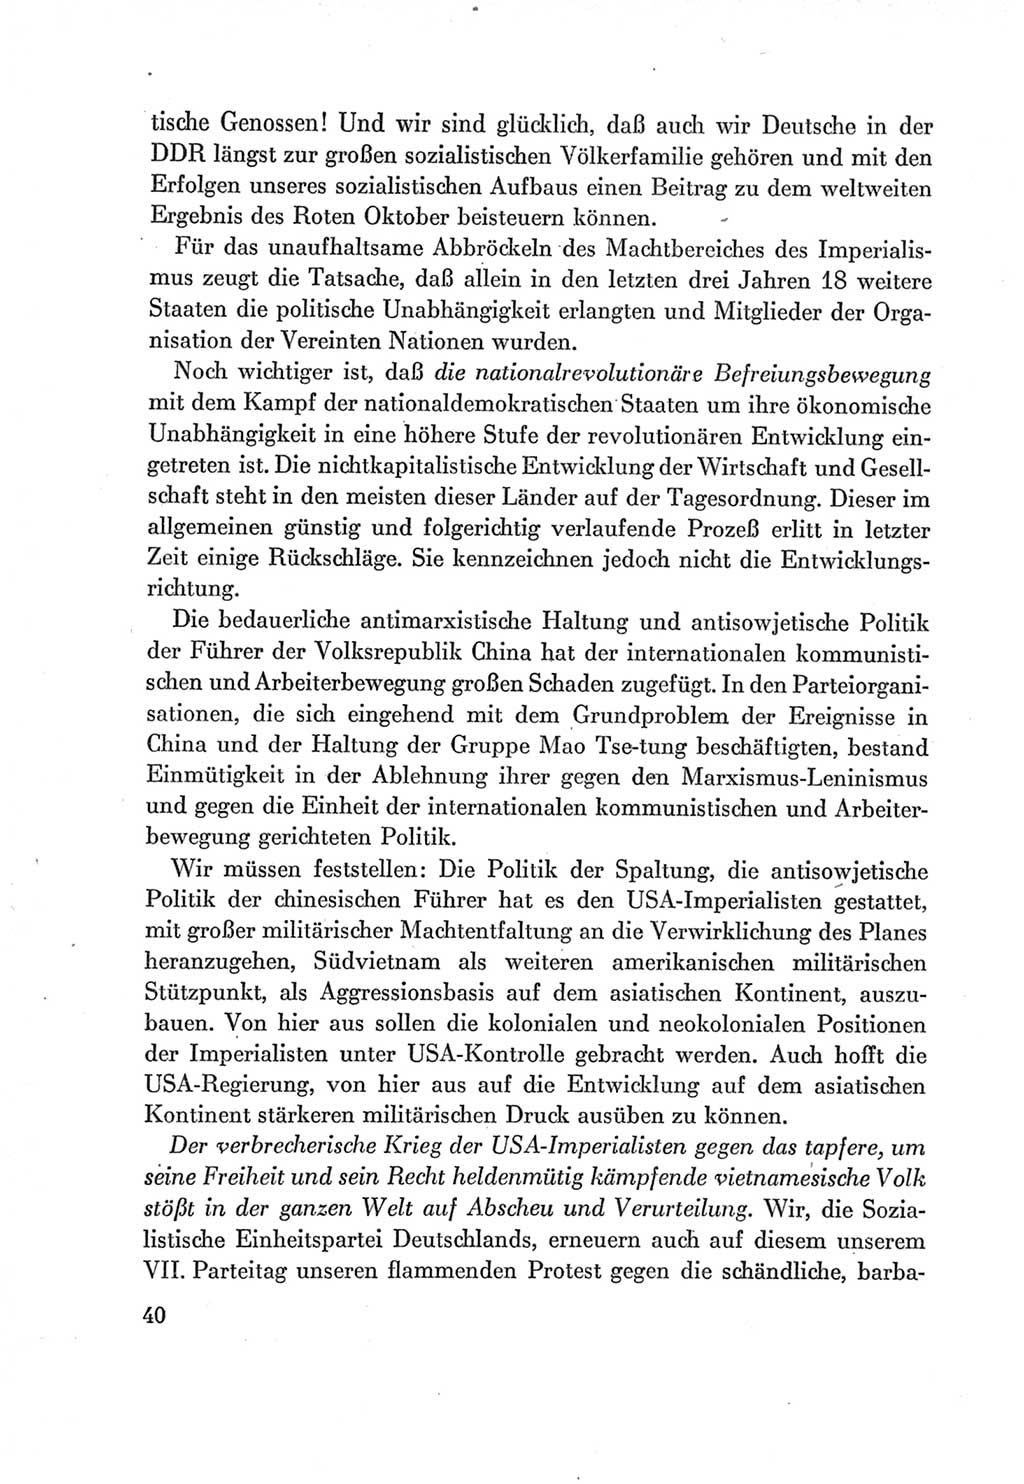 Protokoll der Verhandlungen des Ⅶ. Parteitages der Sozialistischen Einheitspartei Deutschlands (SED) [Deutsche Demokratische Republik (DDR)] 1967, Band Ⅰ, Seite 40 (Prot. Verh. Ⅶ. PT SED DDR 1967, Bd. Ⅰ, S. 40)